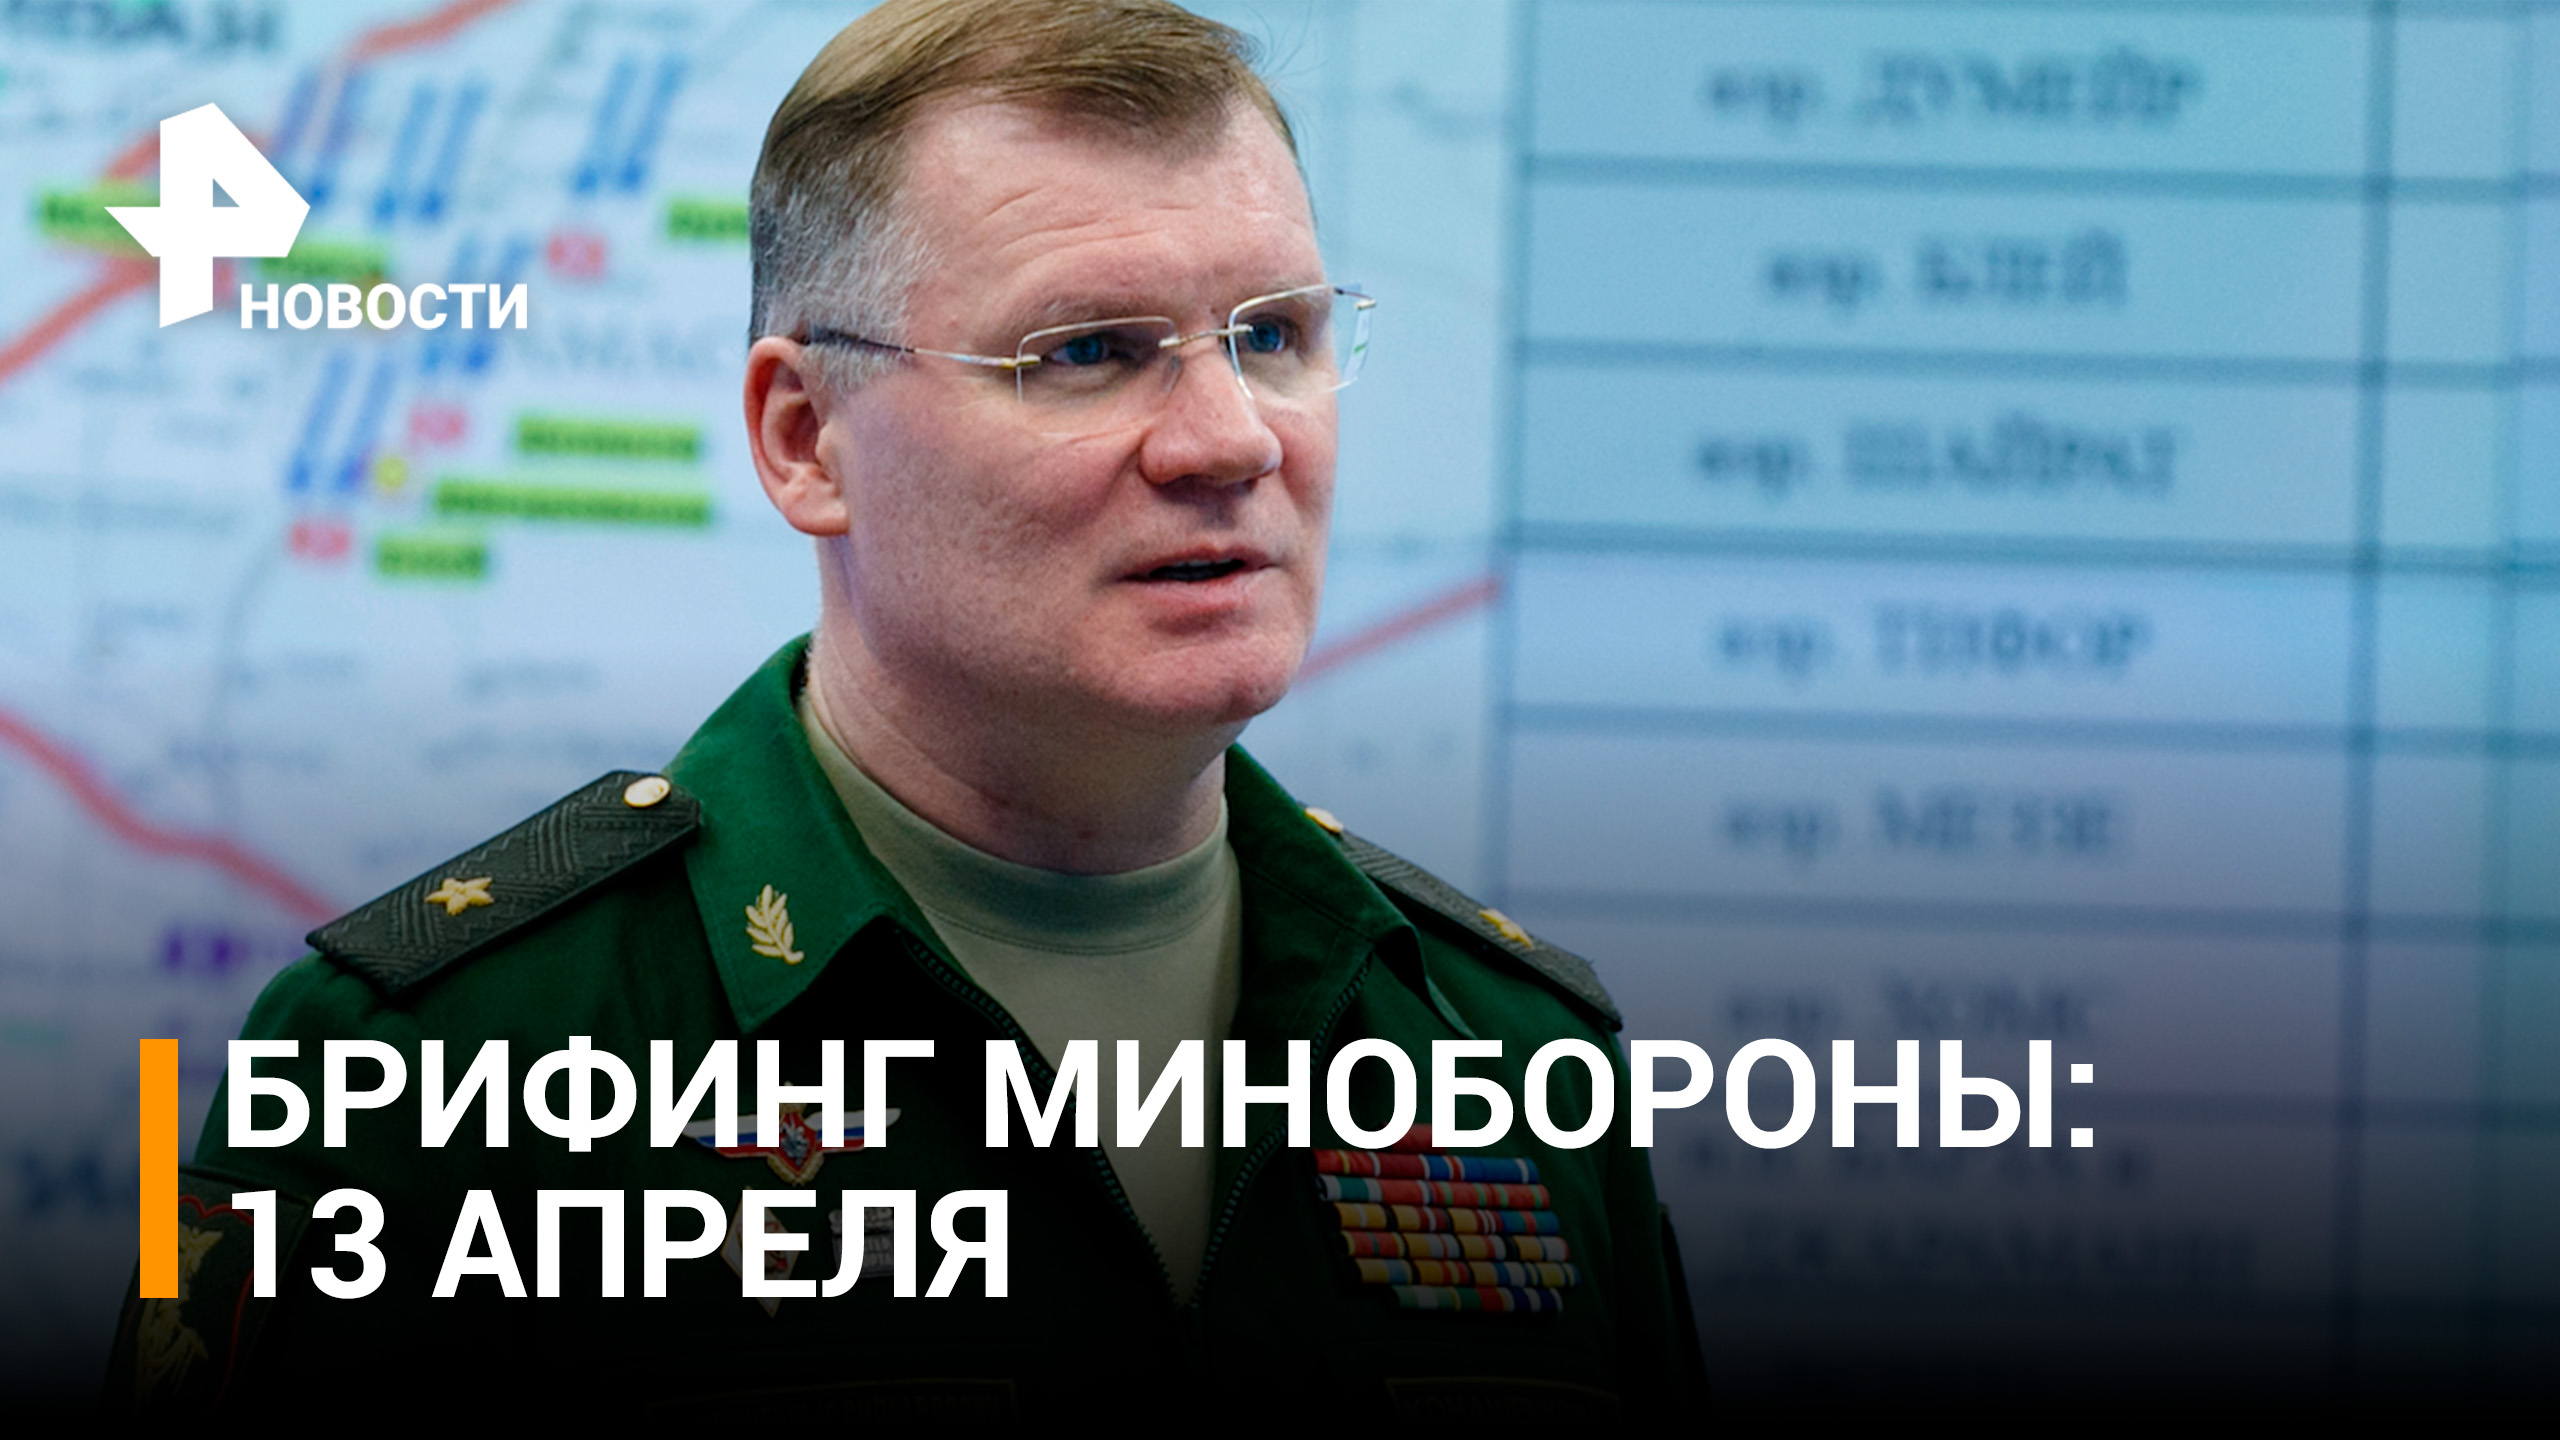 На Донецком направлении ВСУ за сутки потеряли до 300 военнослужащих - брифинг МО РФ